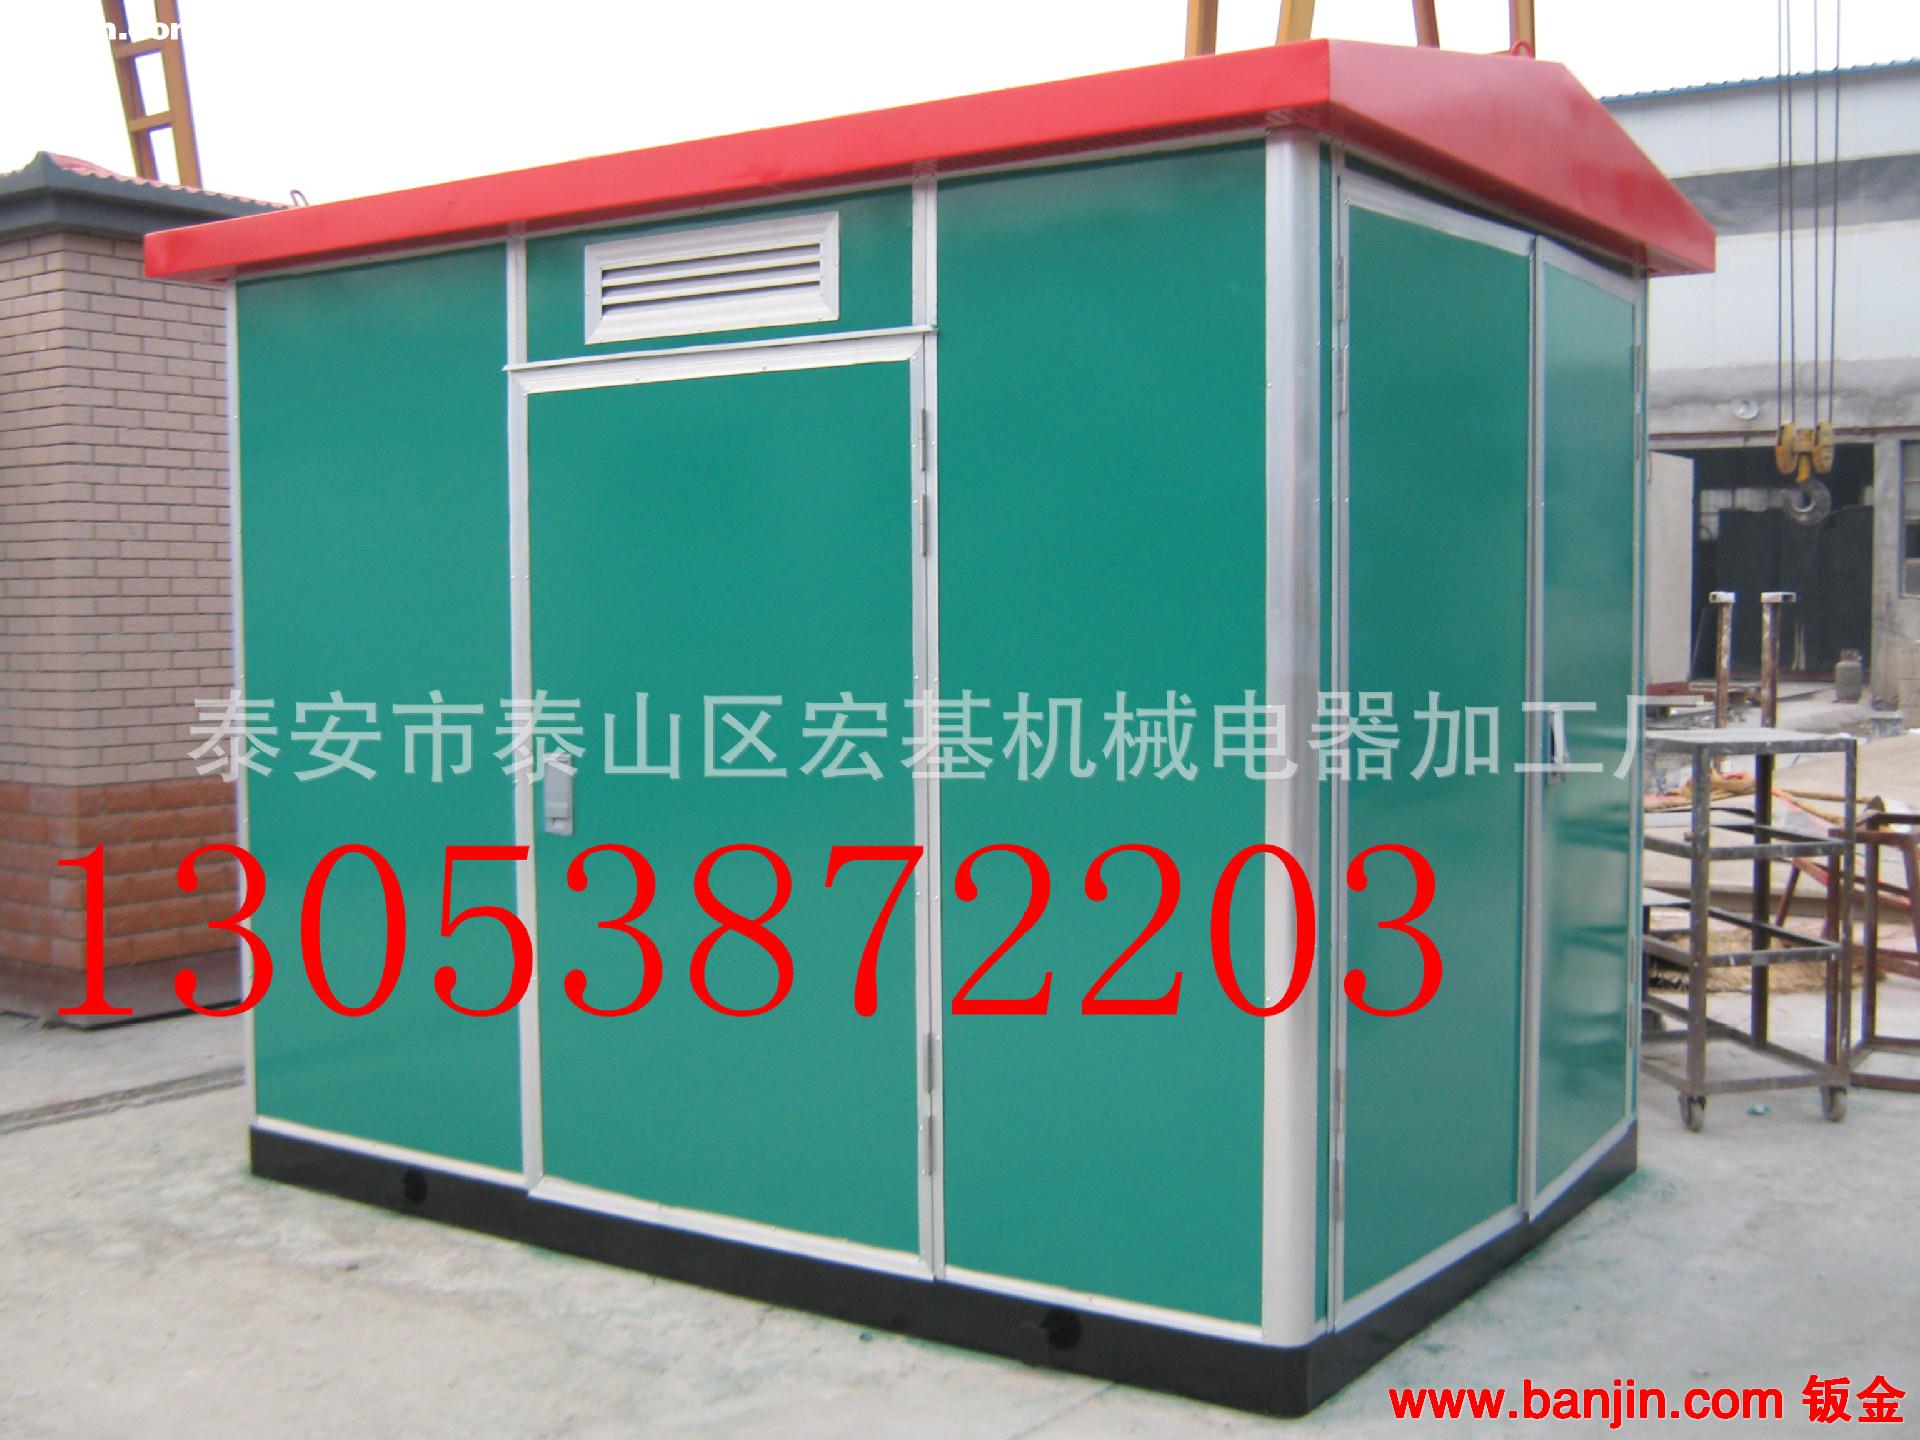 专业生产箱式变电站 长期低价销售优质箱式变电站 小区专用